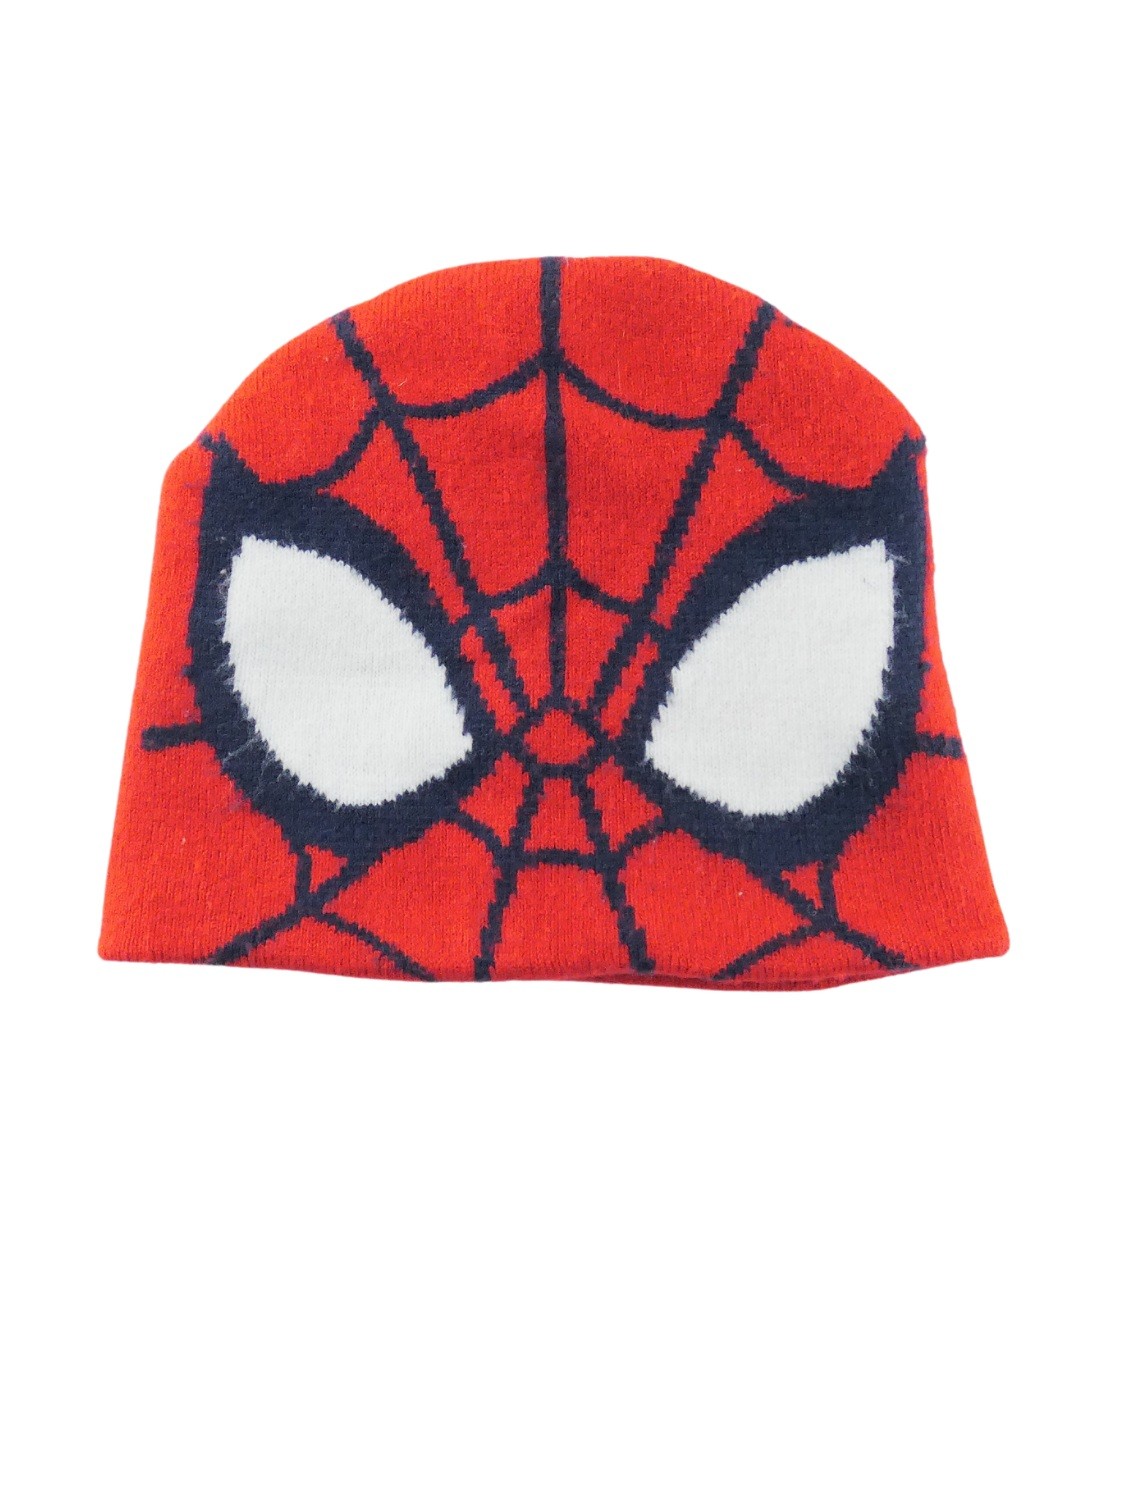 Bonnet Spiderman 